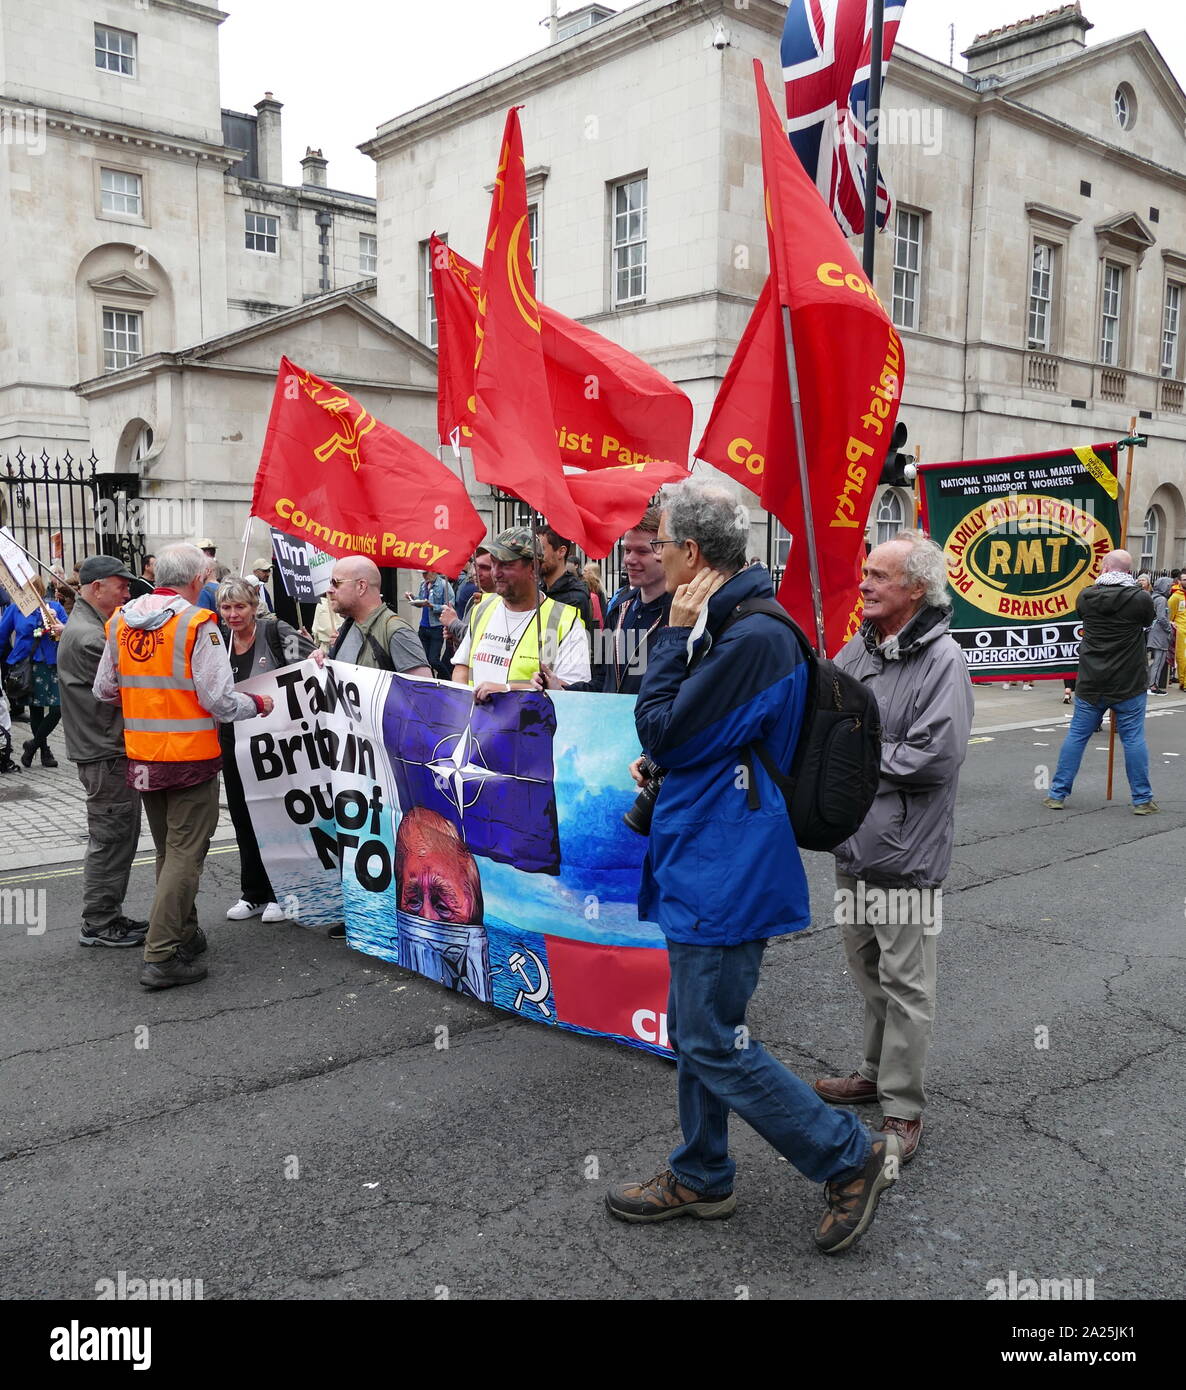 Manifestations à Whitehall et Trafalgar Square Londres durant la visite officielle du Président américain Donald Trump en Grande-Bretagne ; Juin 2019 Banque D'Images